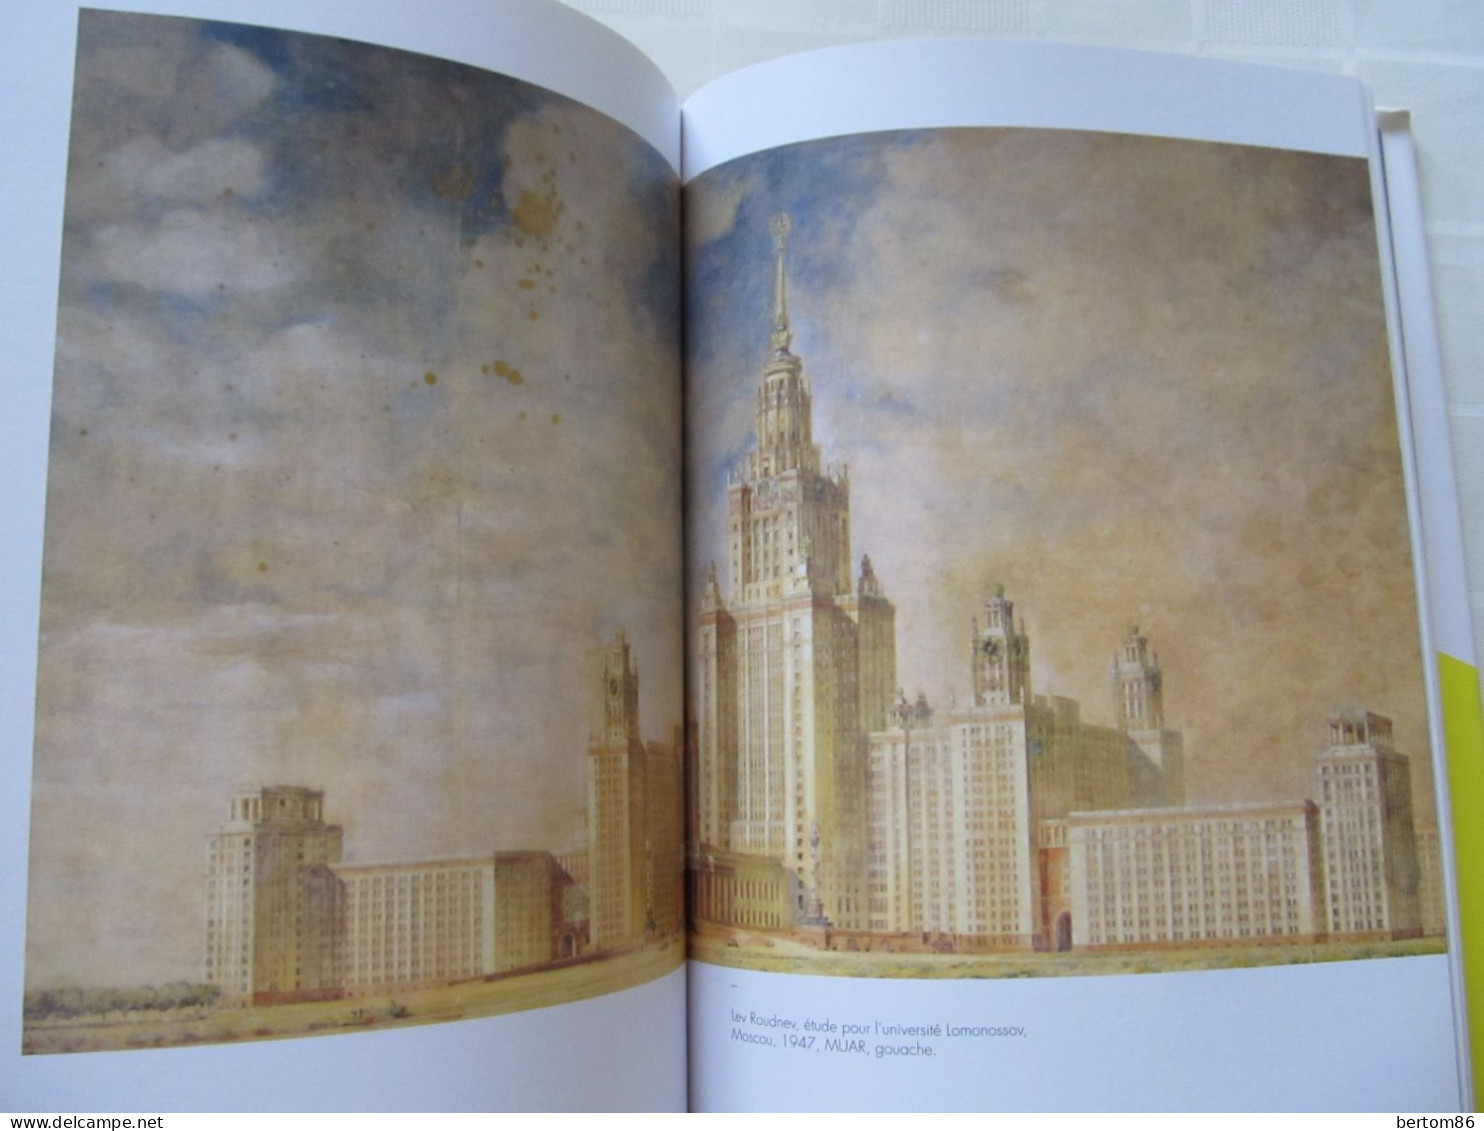 ARCHITECTURE - AMERIQUES / URSS ARCHITECTURES DU DEFI - FABIEN BELLAT - 2014. - Art